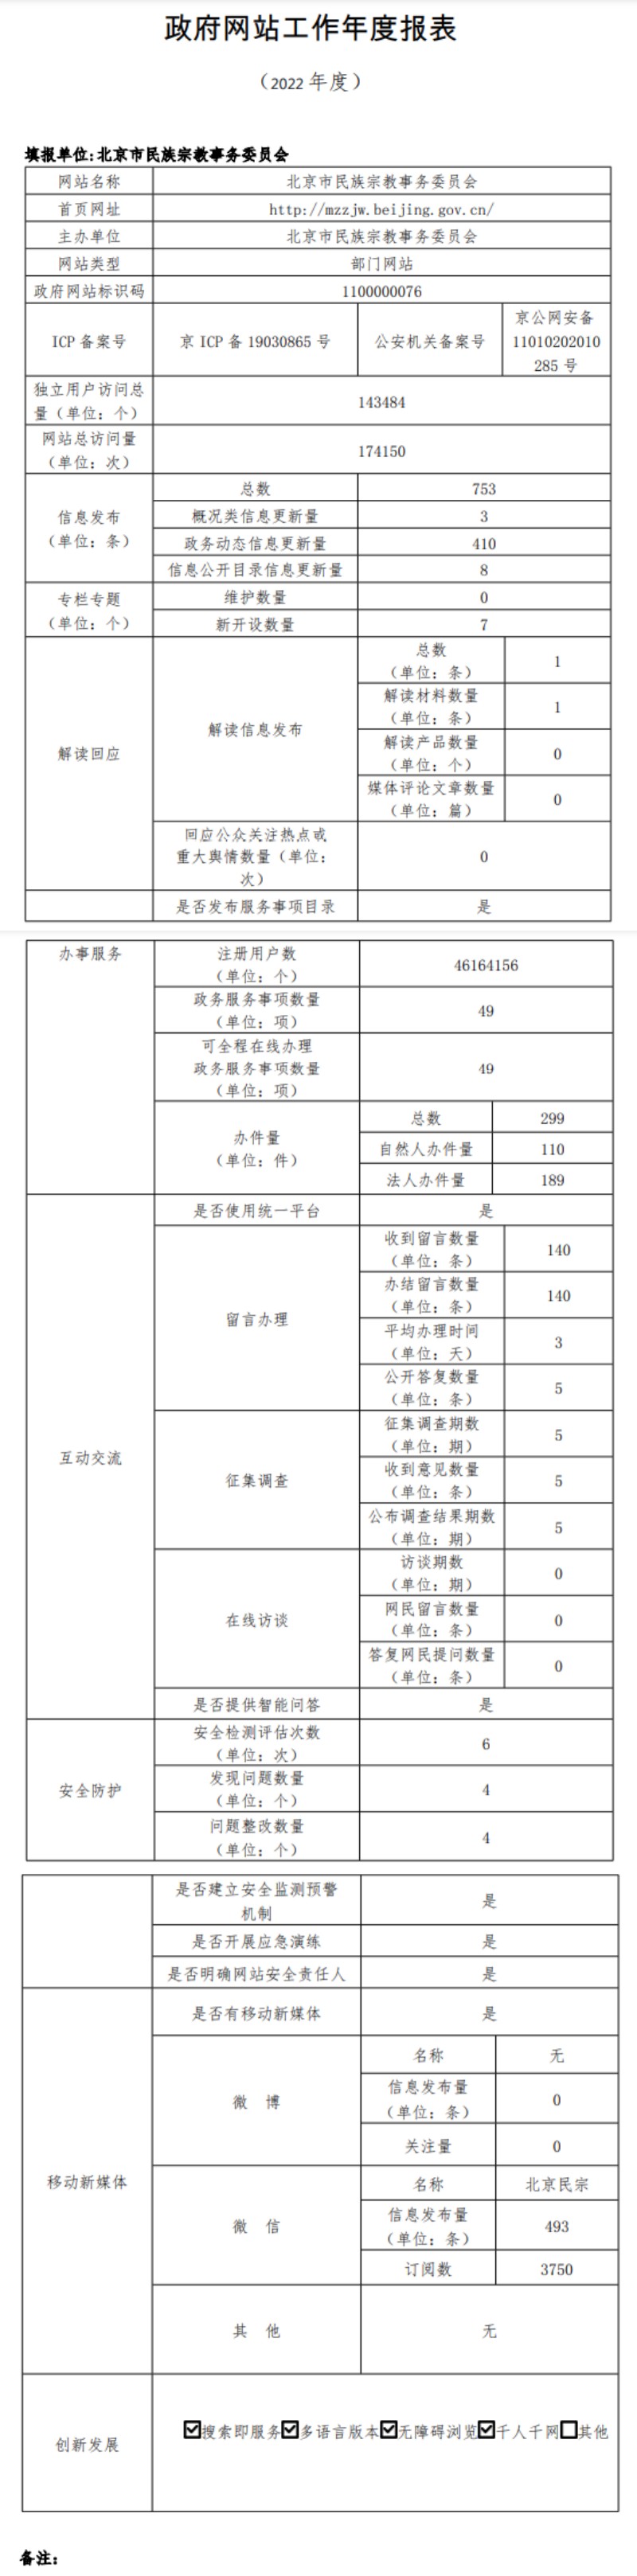 北京市民族宗教事务委员会2022年政府网站年度工作报表